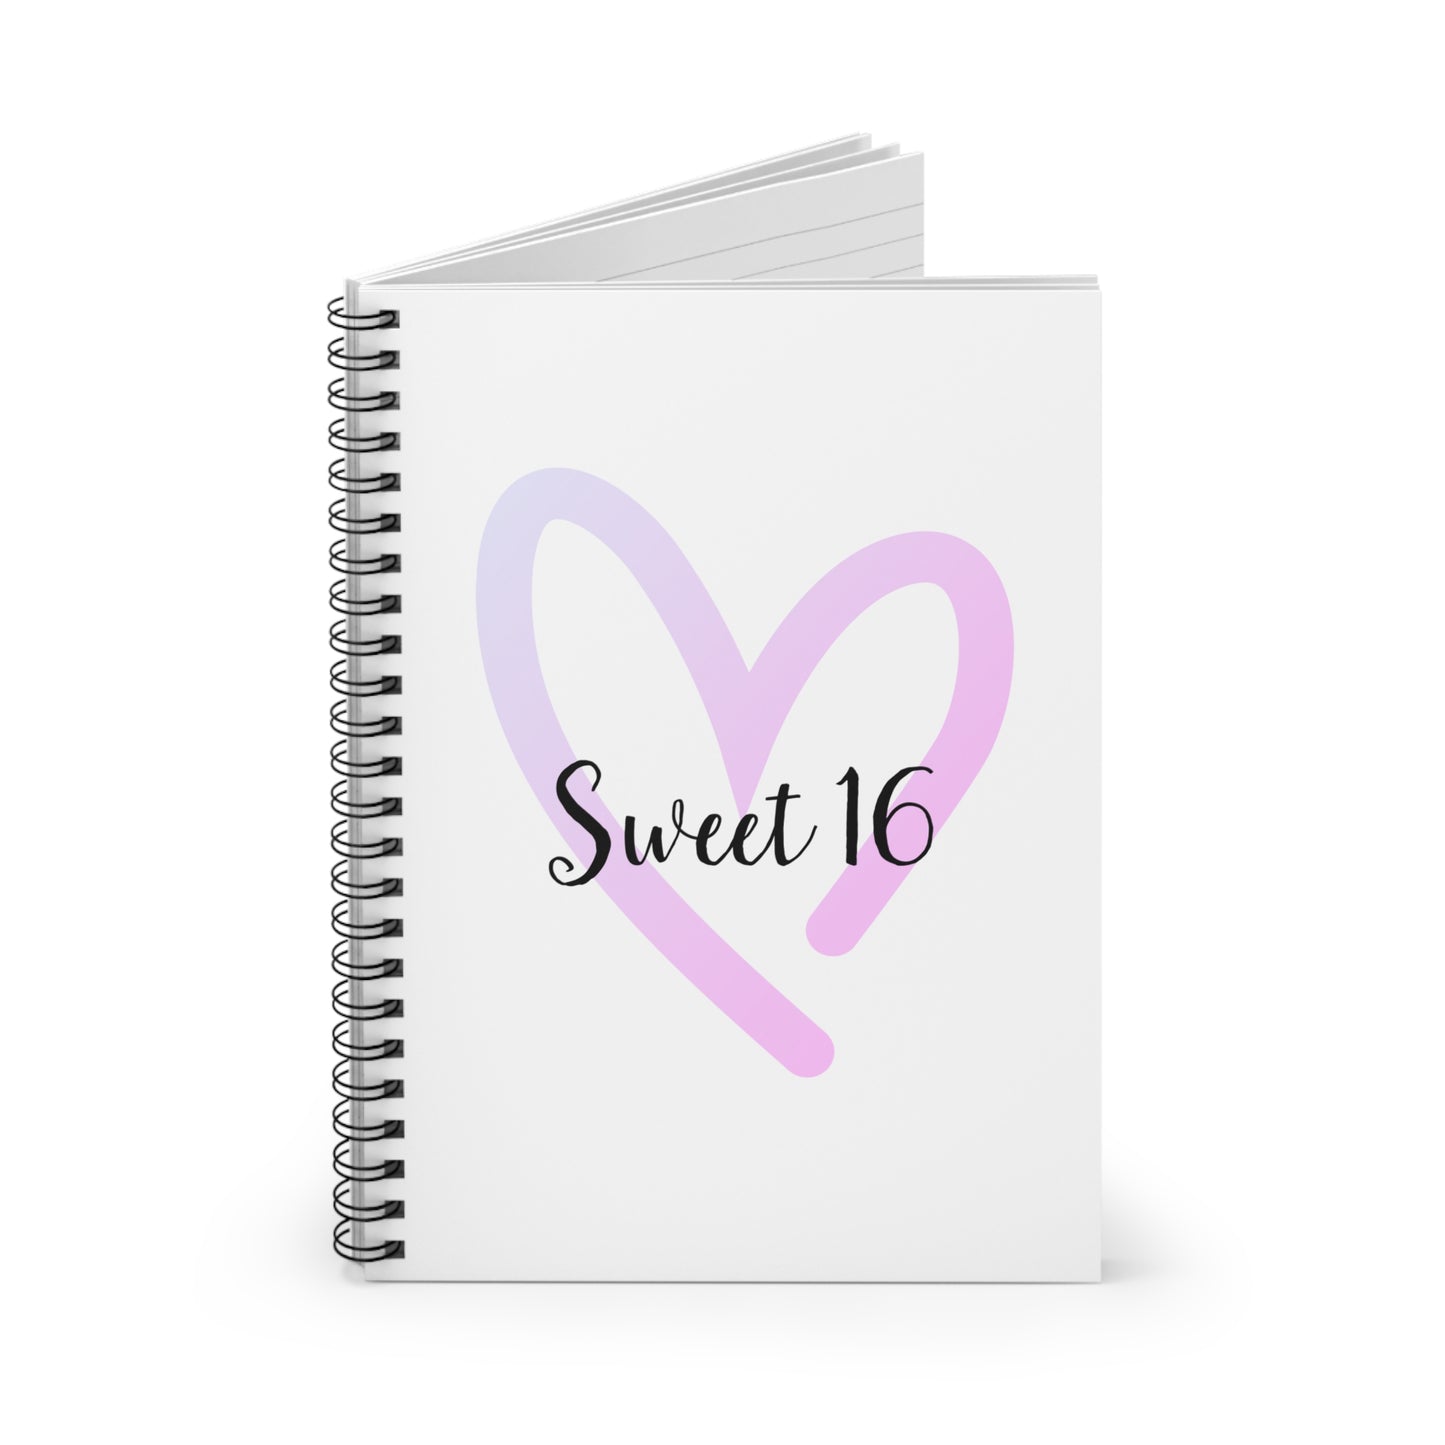 Sweet 16 Spiral Notebook -